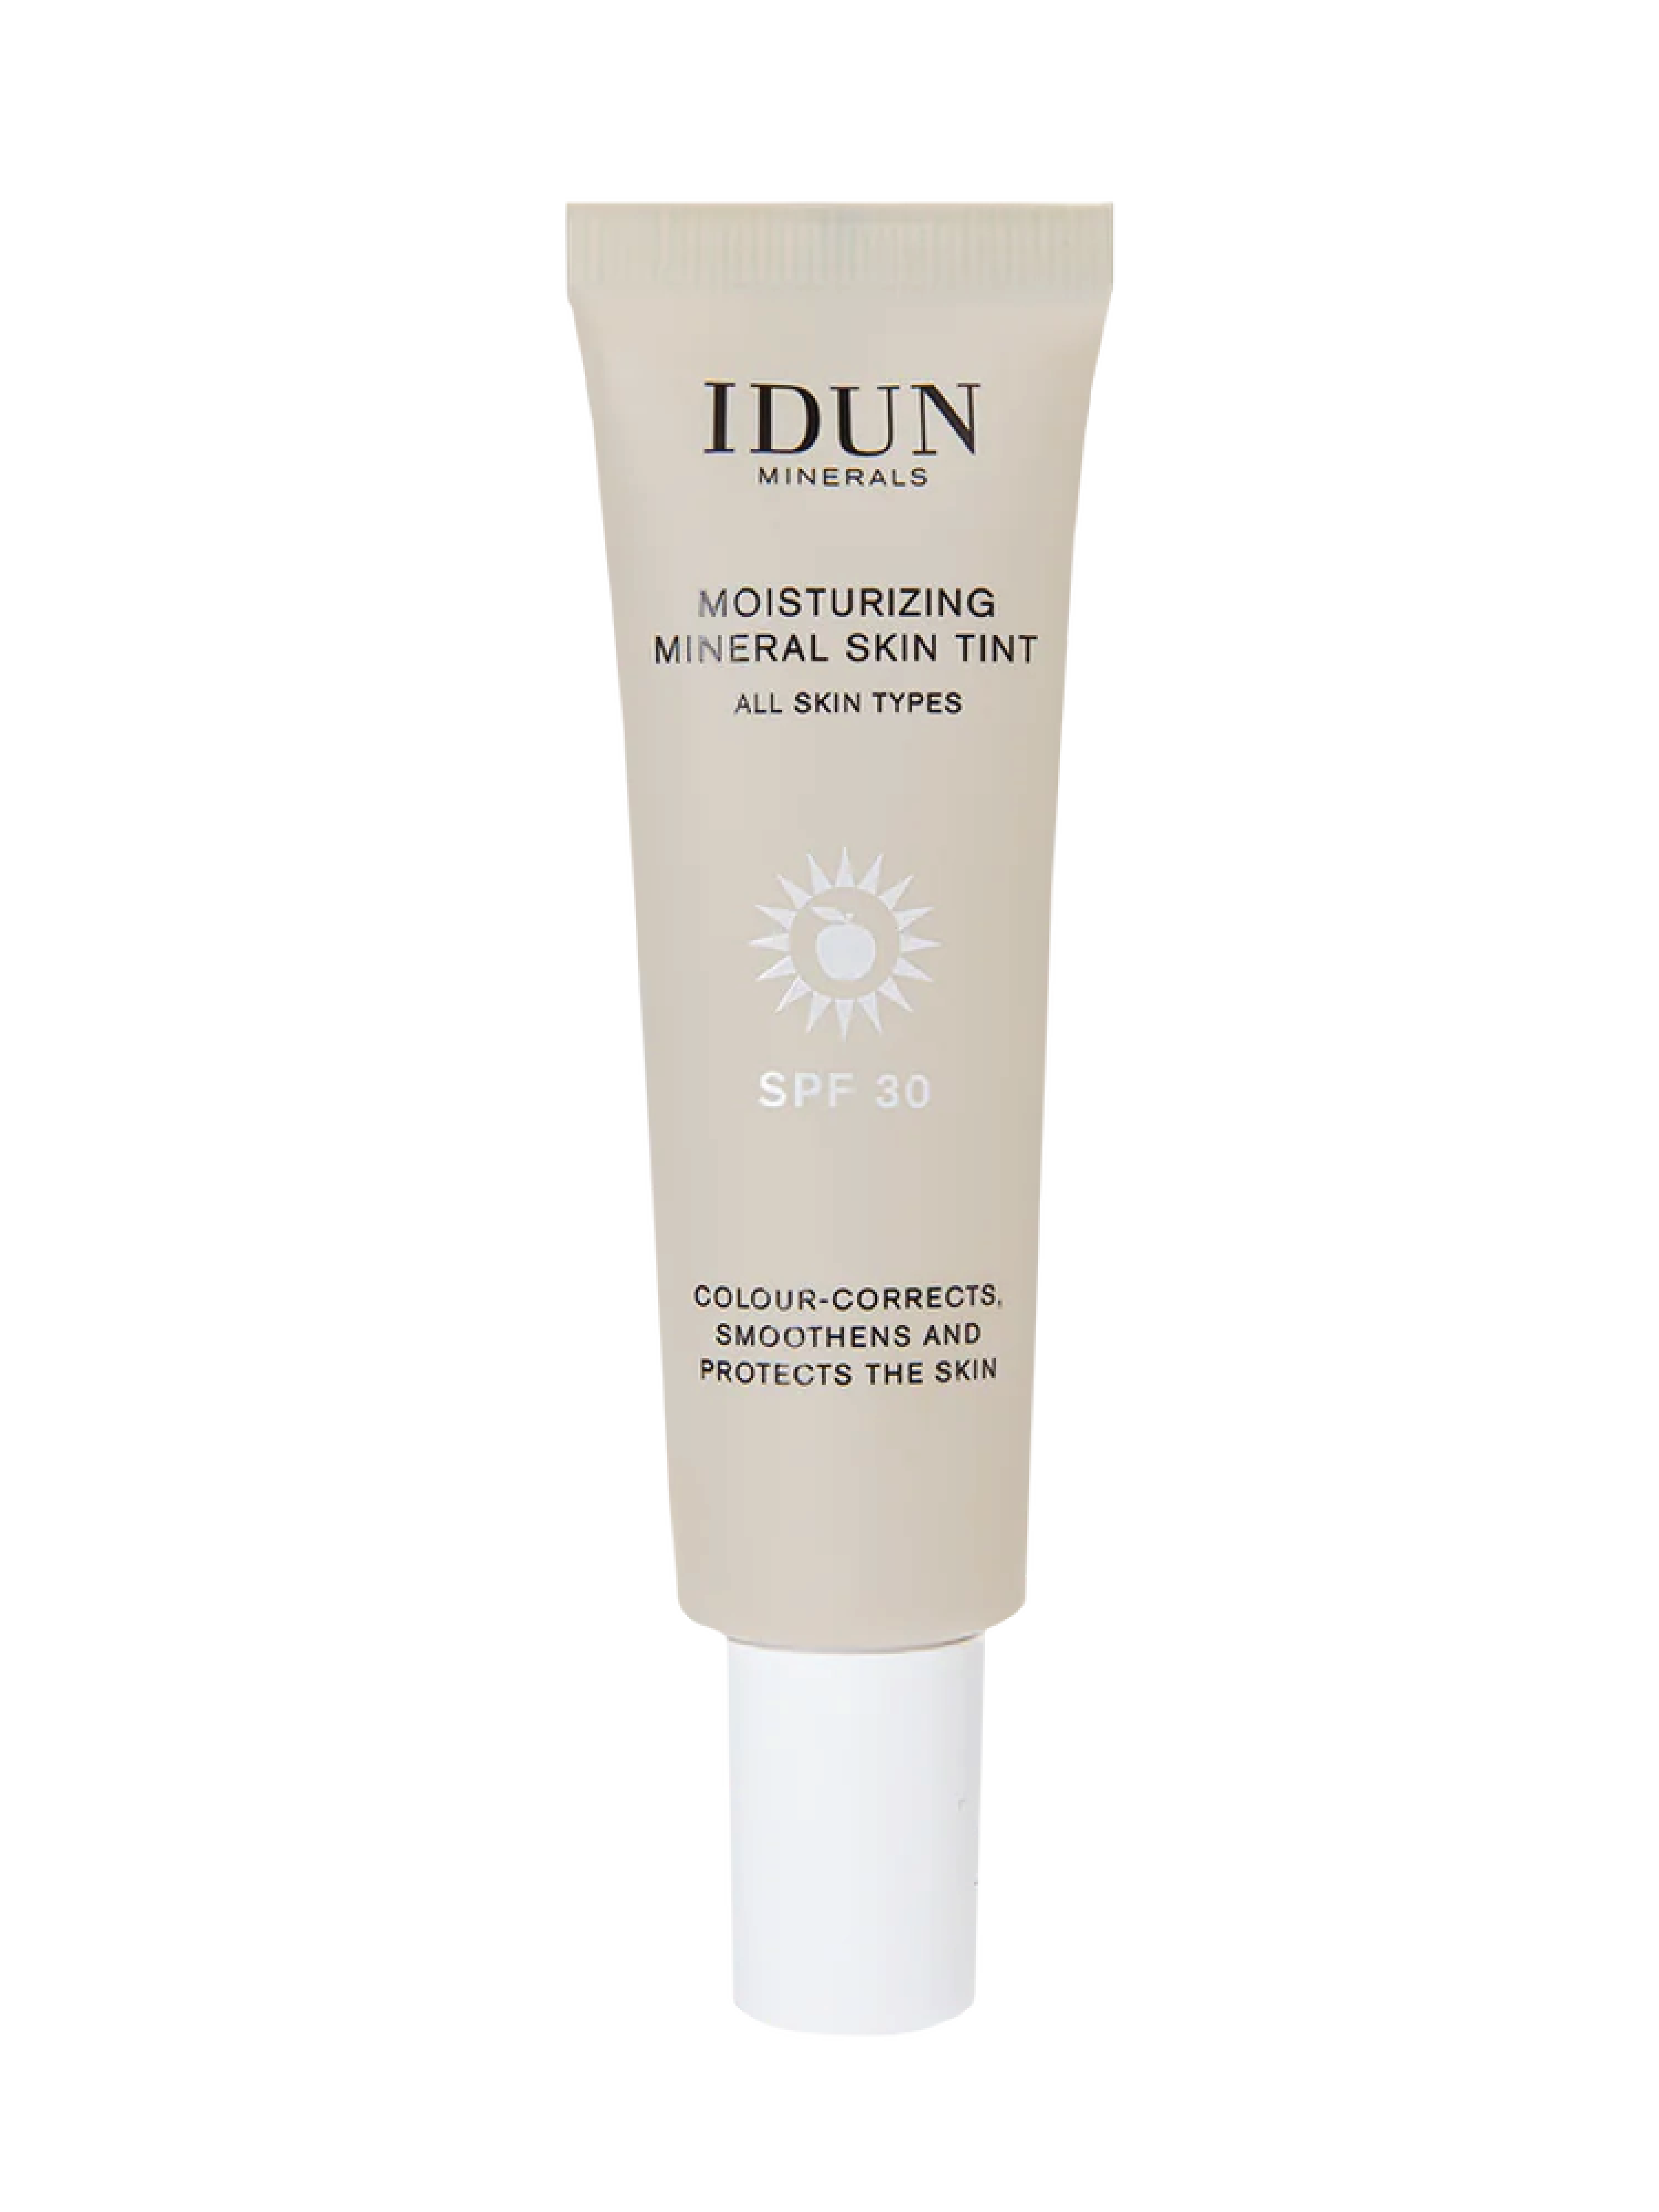 IDUN Minerals Moisturizing Mineral Skin Tint SPF 30, Tan/Deep, 27 ml